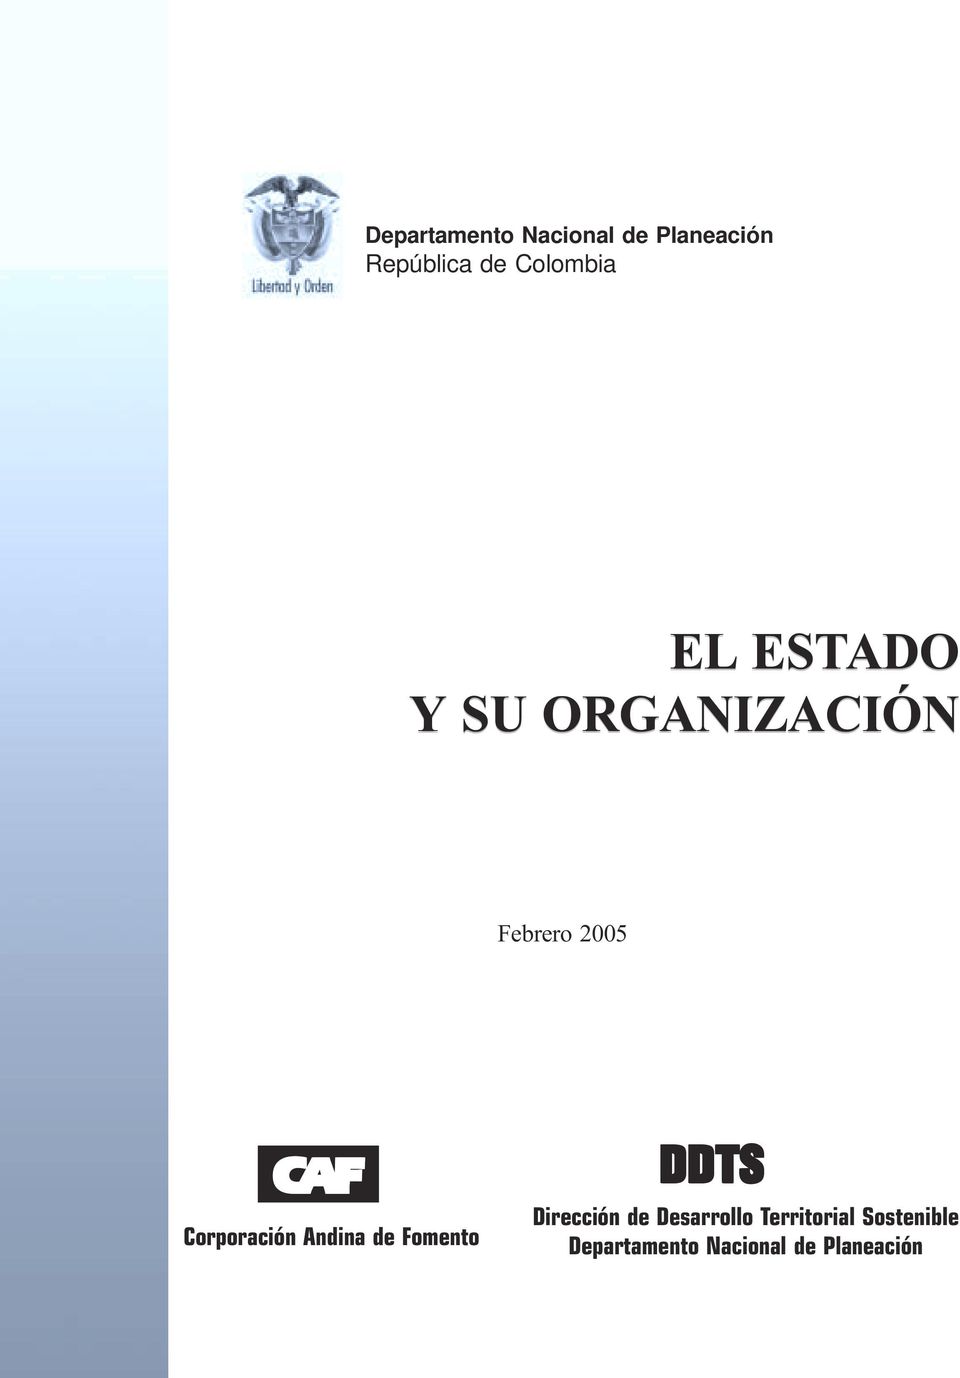 Corporación Andina de Fomento DDTS Dirección de